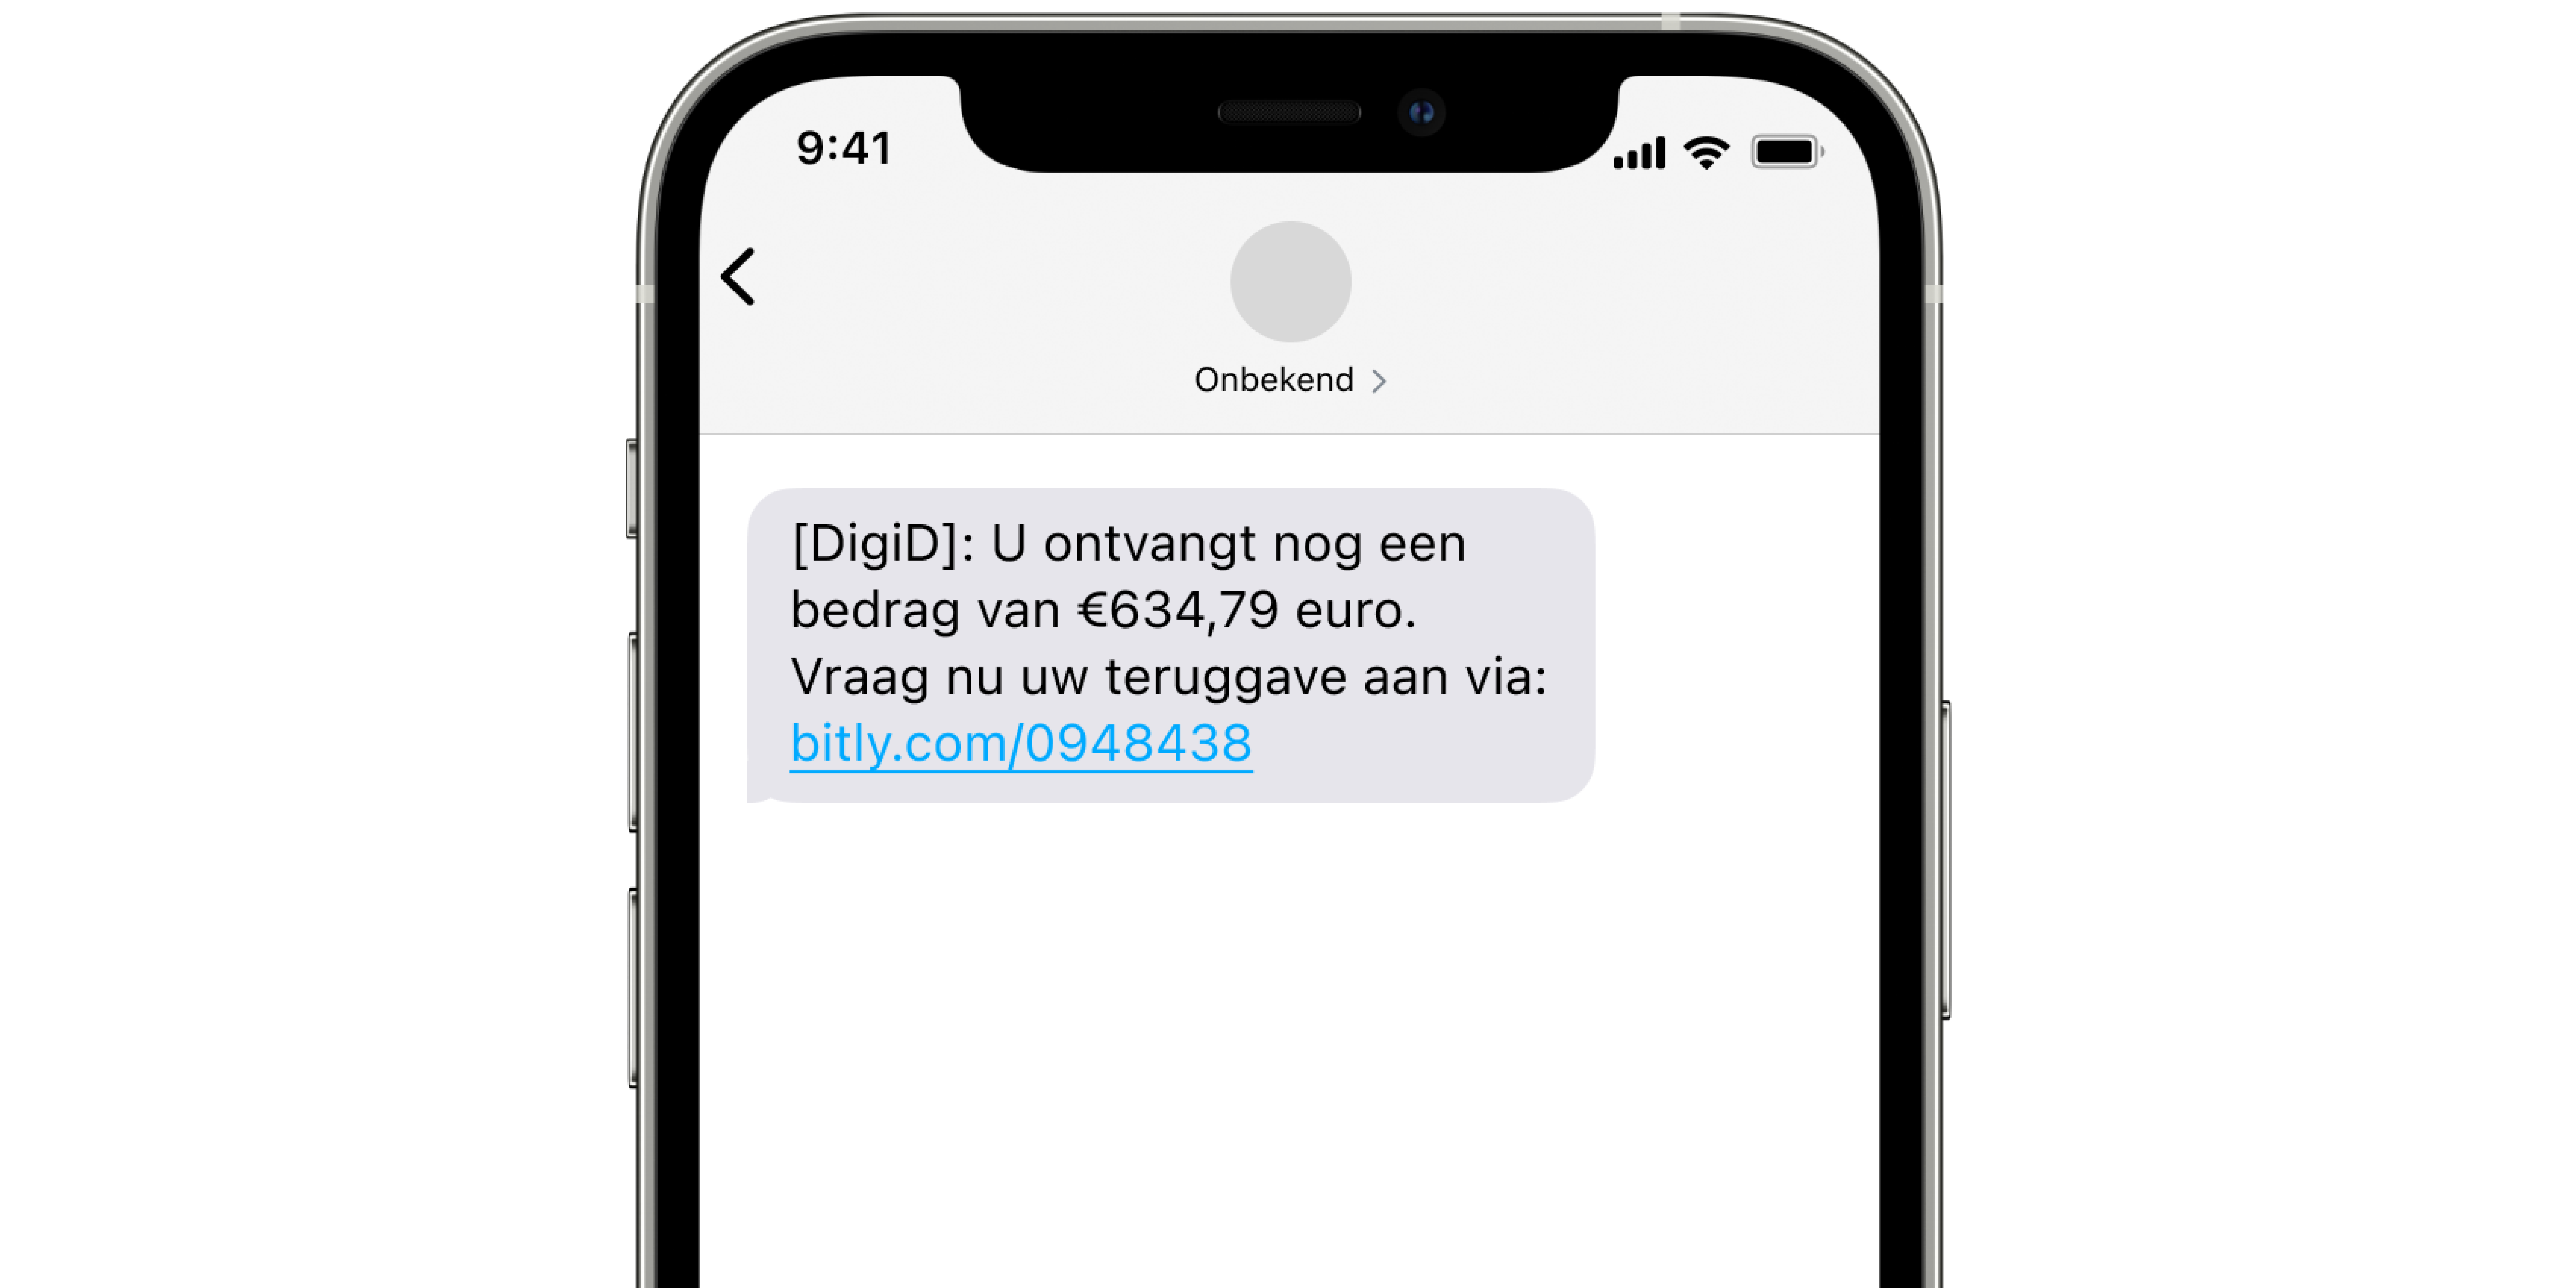 Sms beginnend met '[DigiD]: U ontvangt nog een bedrag van €634,79 euro,' met een bitly.com-link